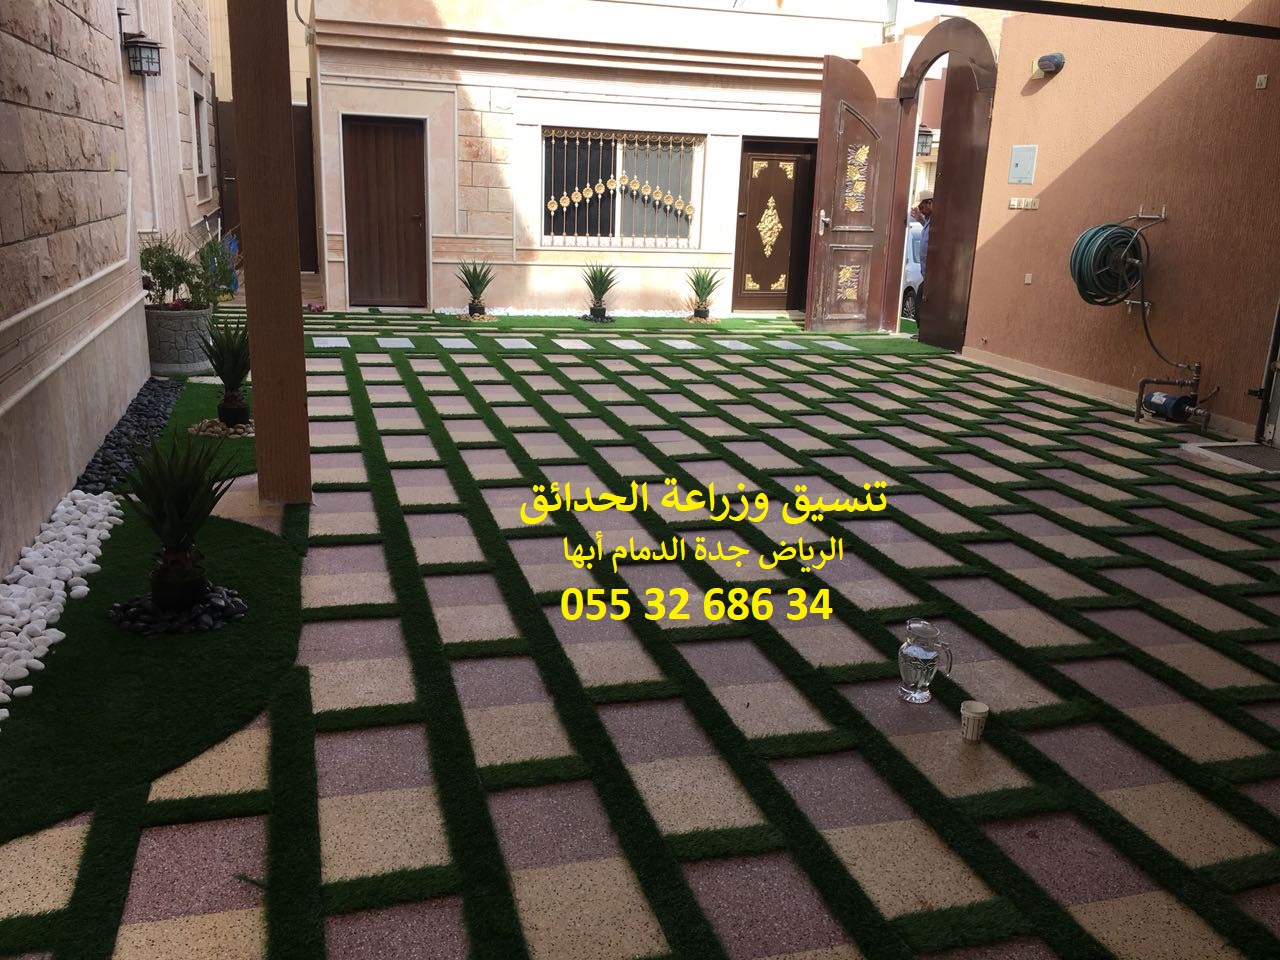 شركة تنسيق حدائق الرياض جدة الدمام ابها 0553268634 P_878y2xhd2